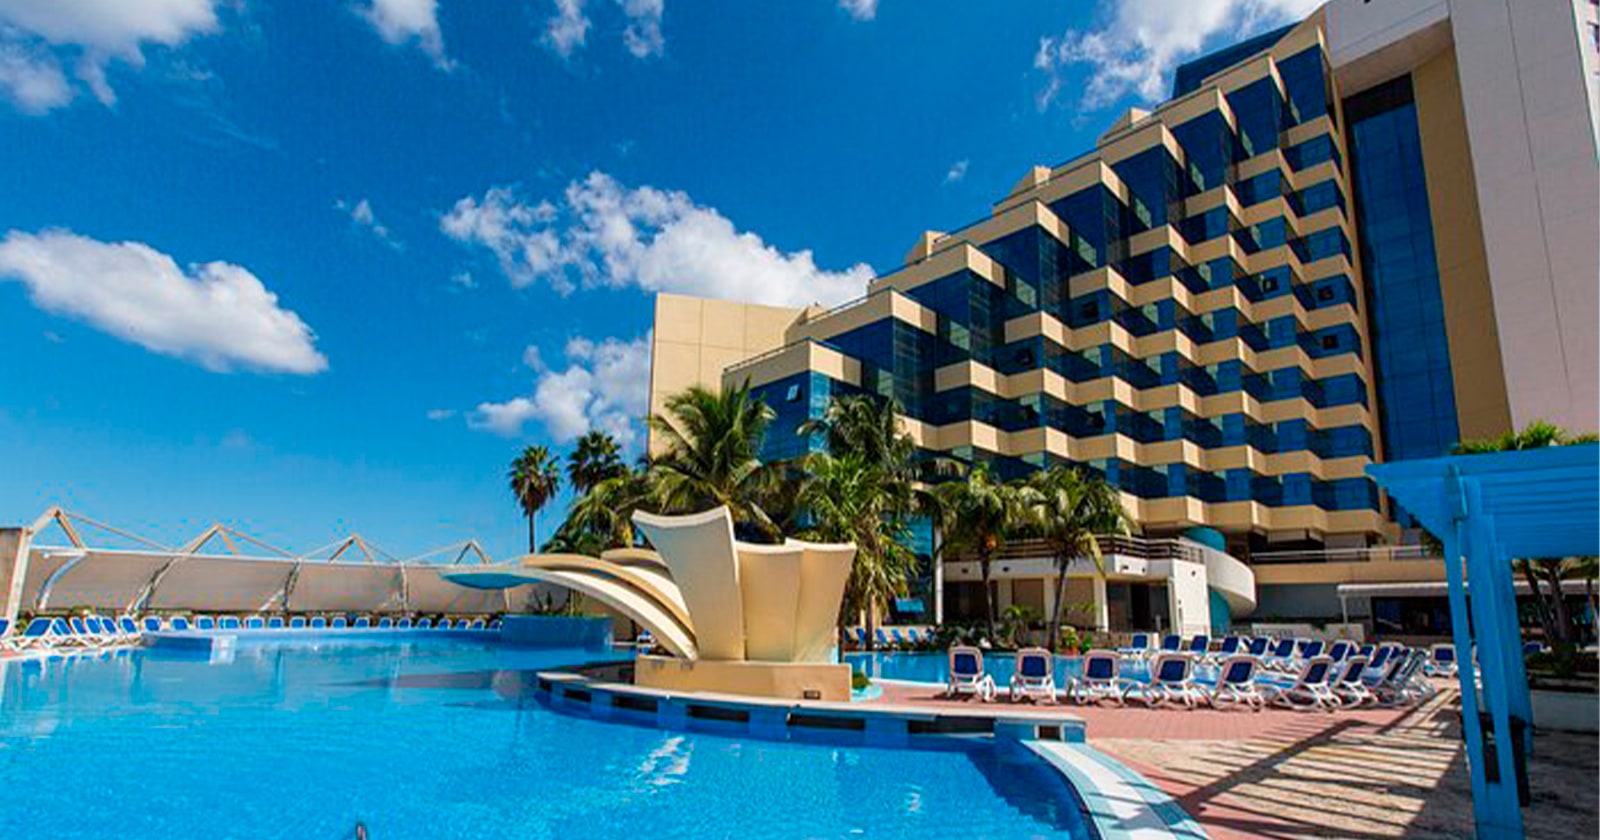 Habanero Hotel Cubano Será Gestionado por Esta Compañía Extranjera